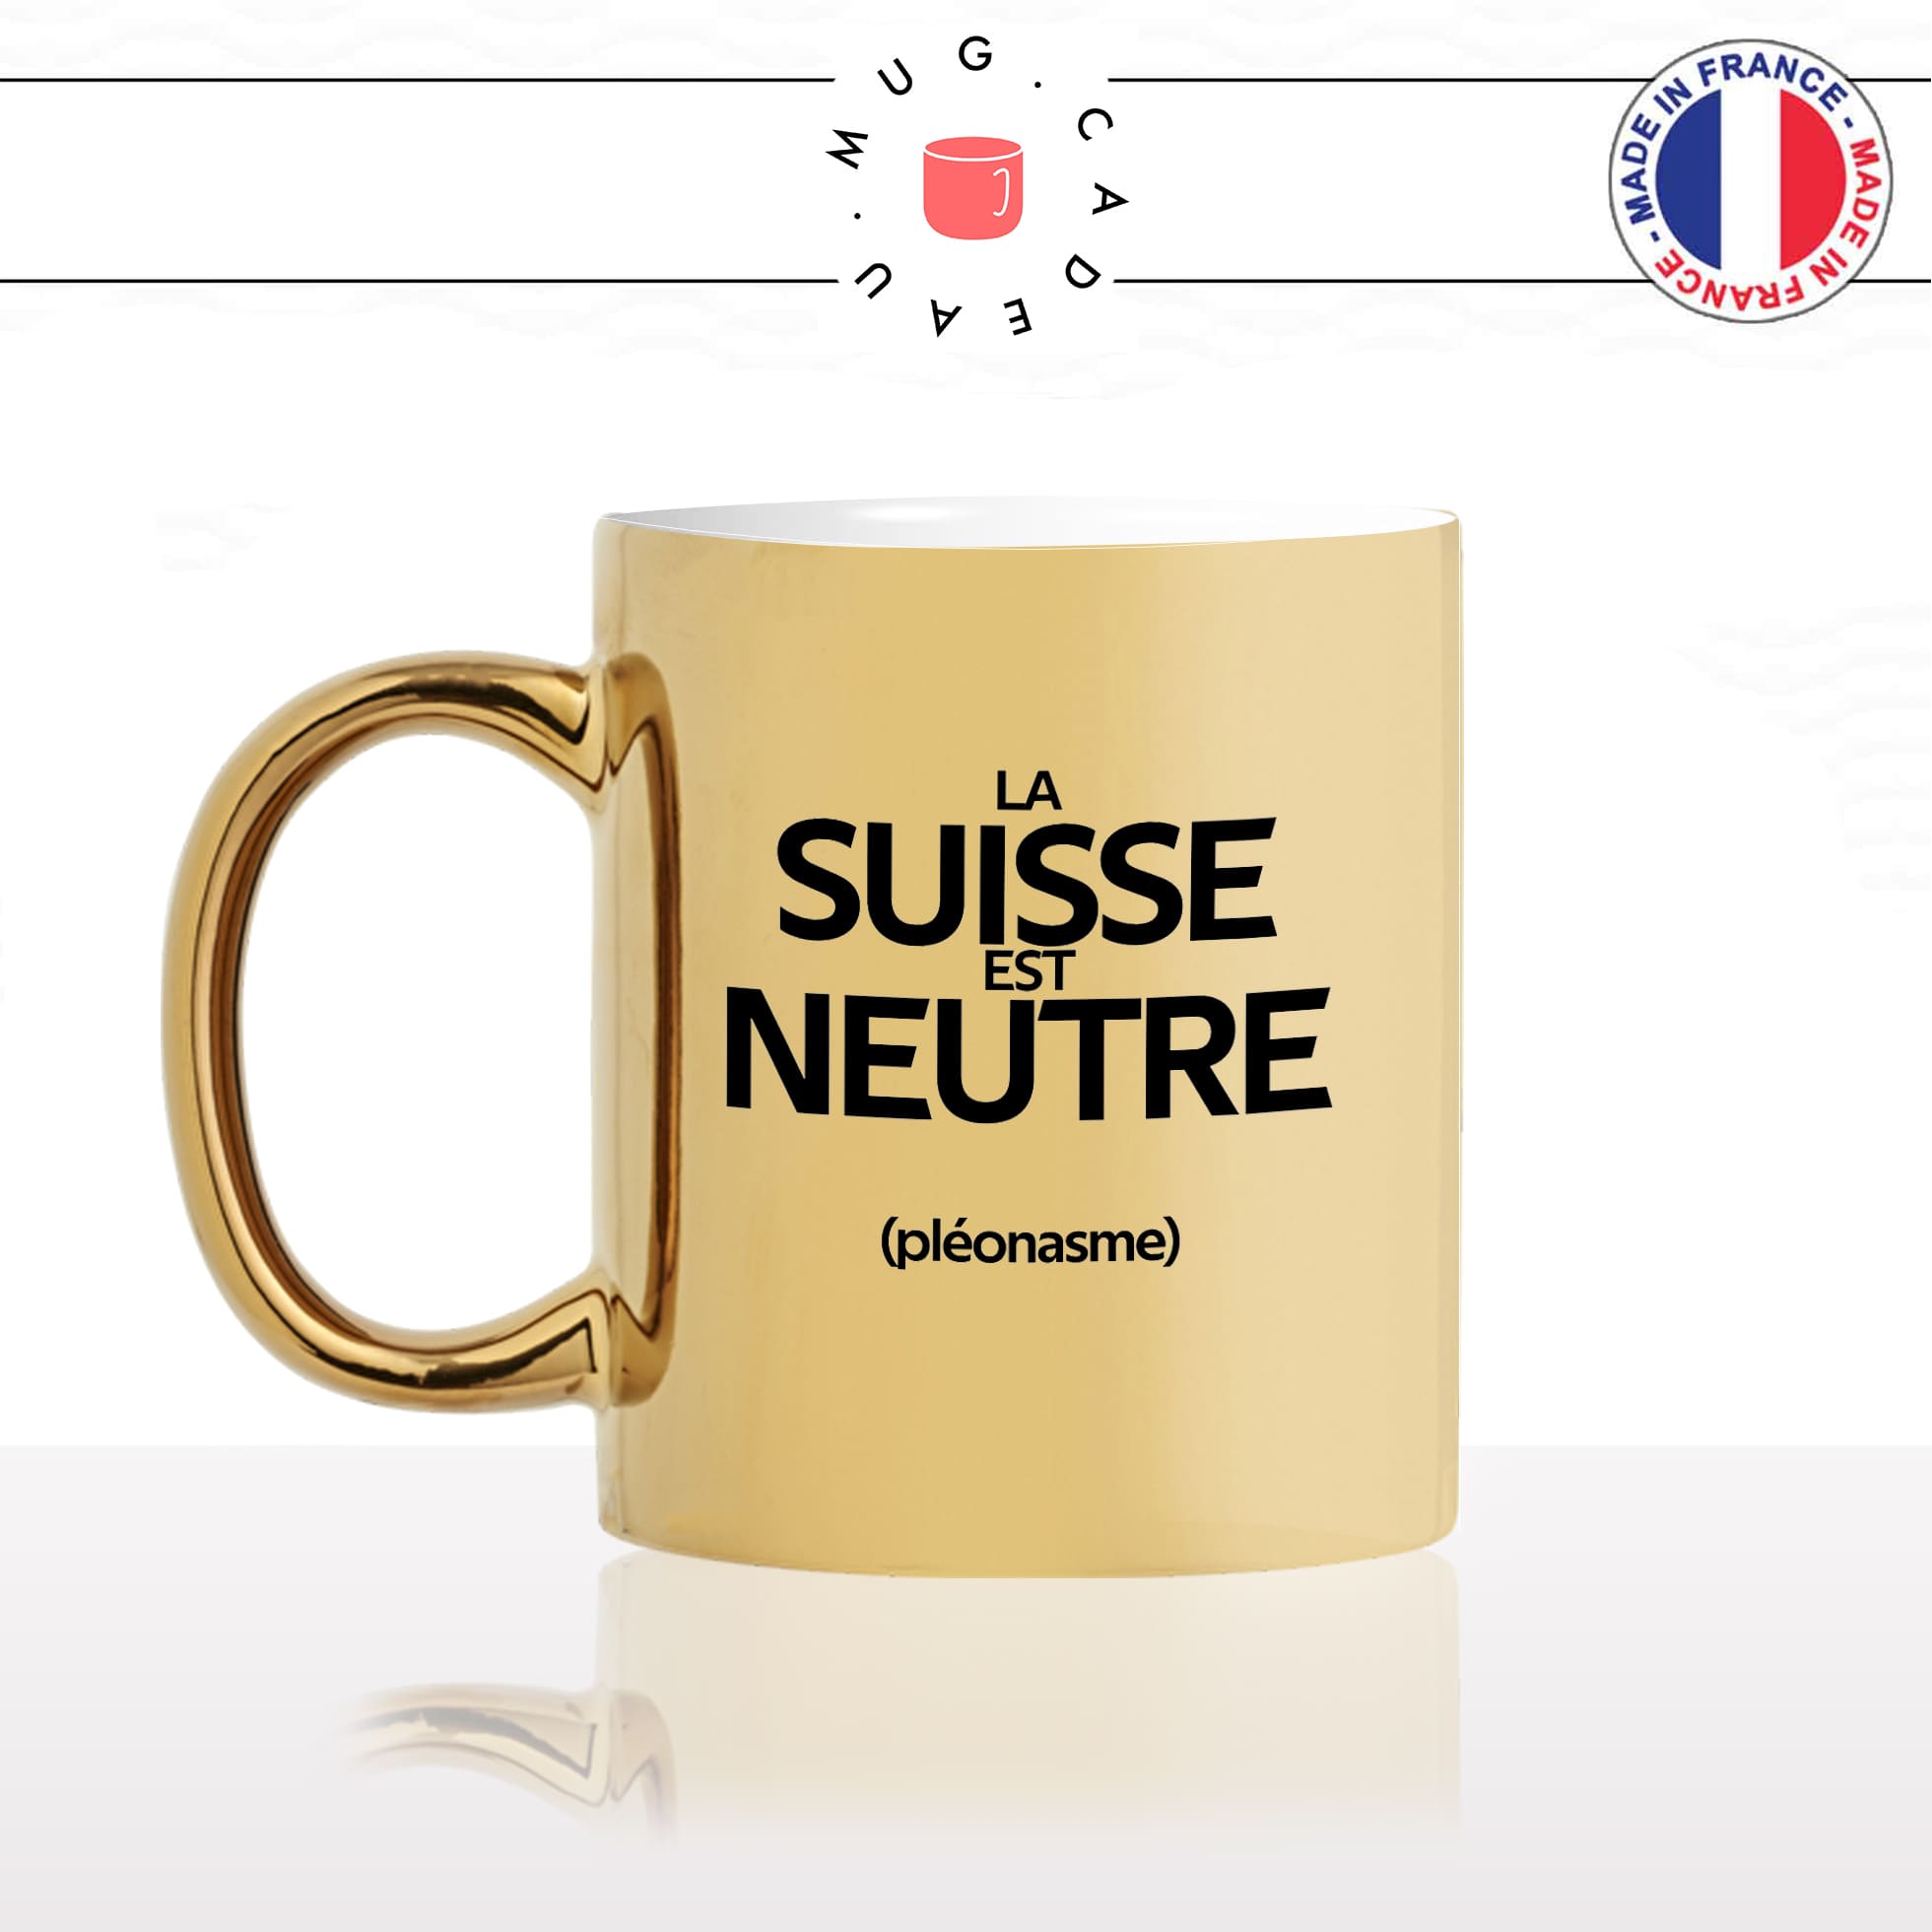 mug-tasse-or-doré-gold-la-suisse-est-neutre-pleonasme-figure-de-style-francais-humour-fun-idée-cadeau-originale-cool